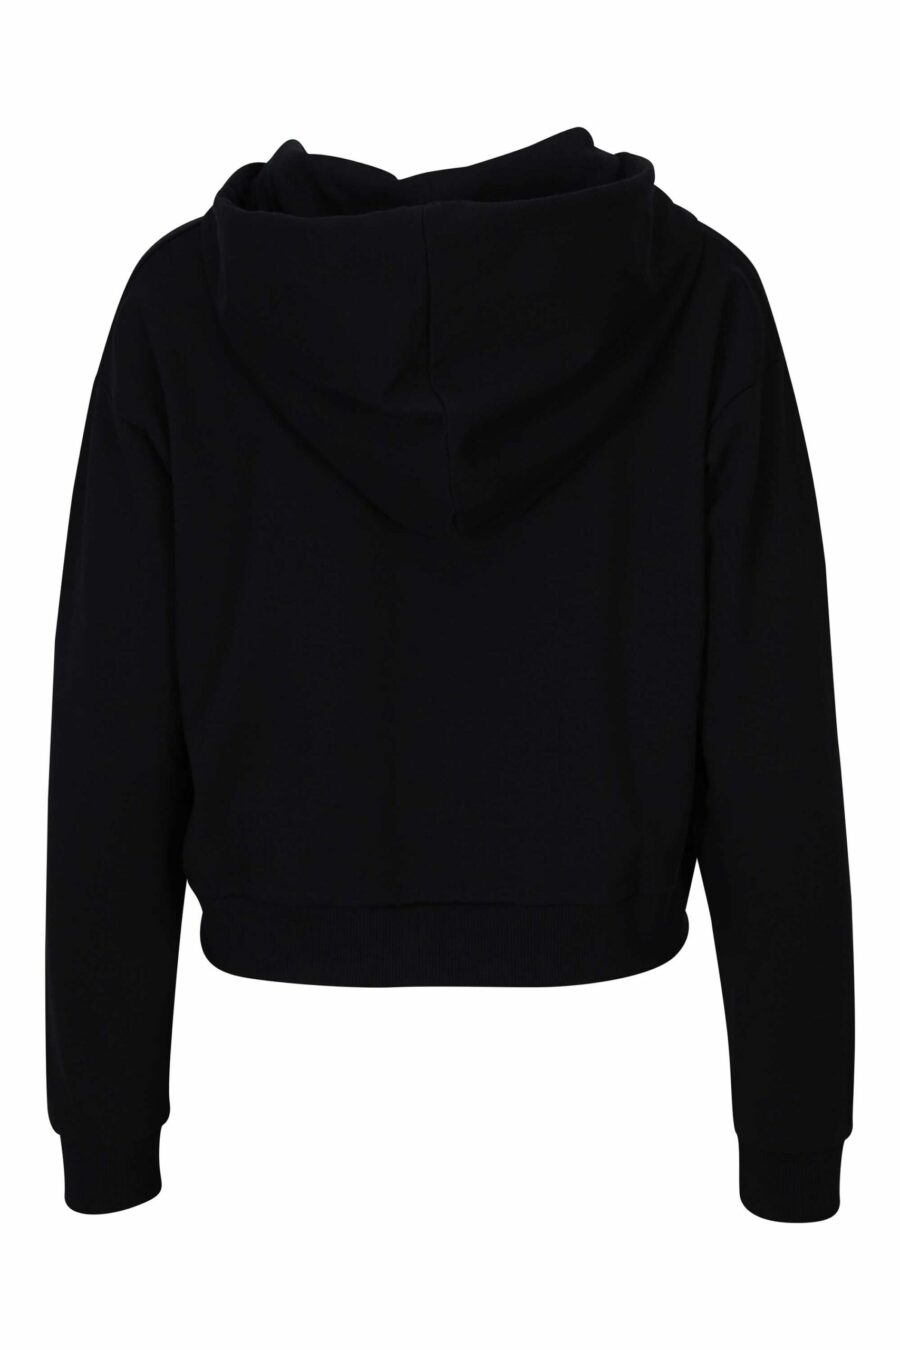 Schwarzes Kapuzensweatshirt mit Reißverschluss und Bärenlogoaufnäher "underbear" - 667113050751 1 skaliert